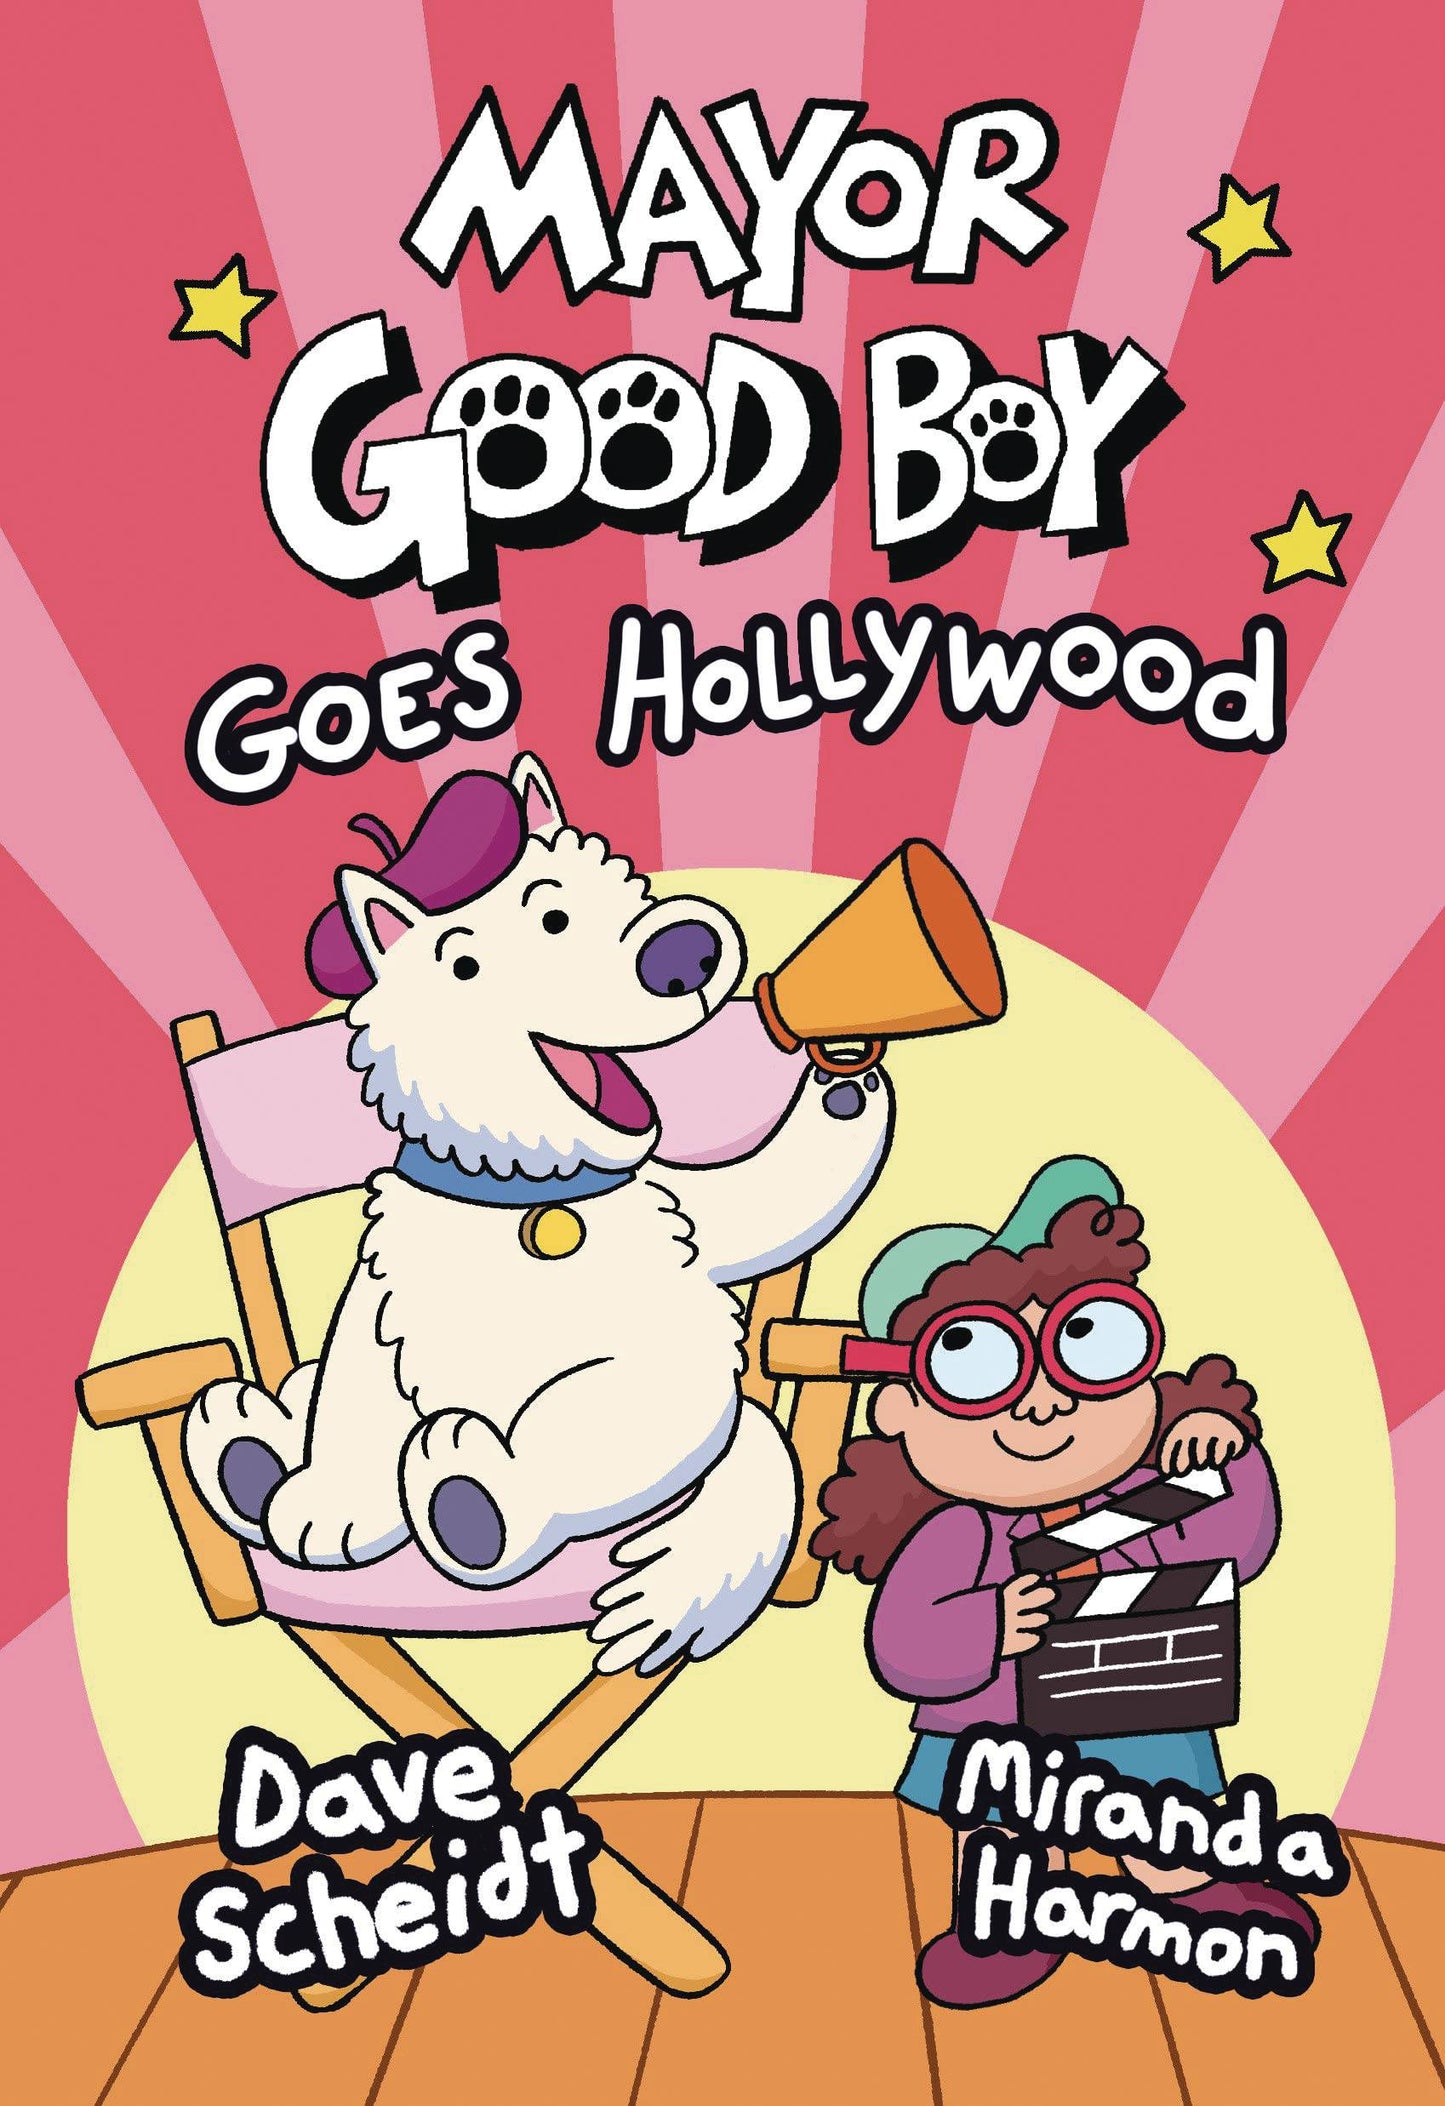 Mayor Good Boy Vol. 02 Goes Hollywood